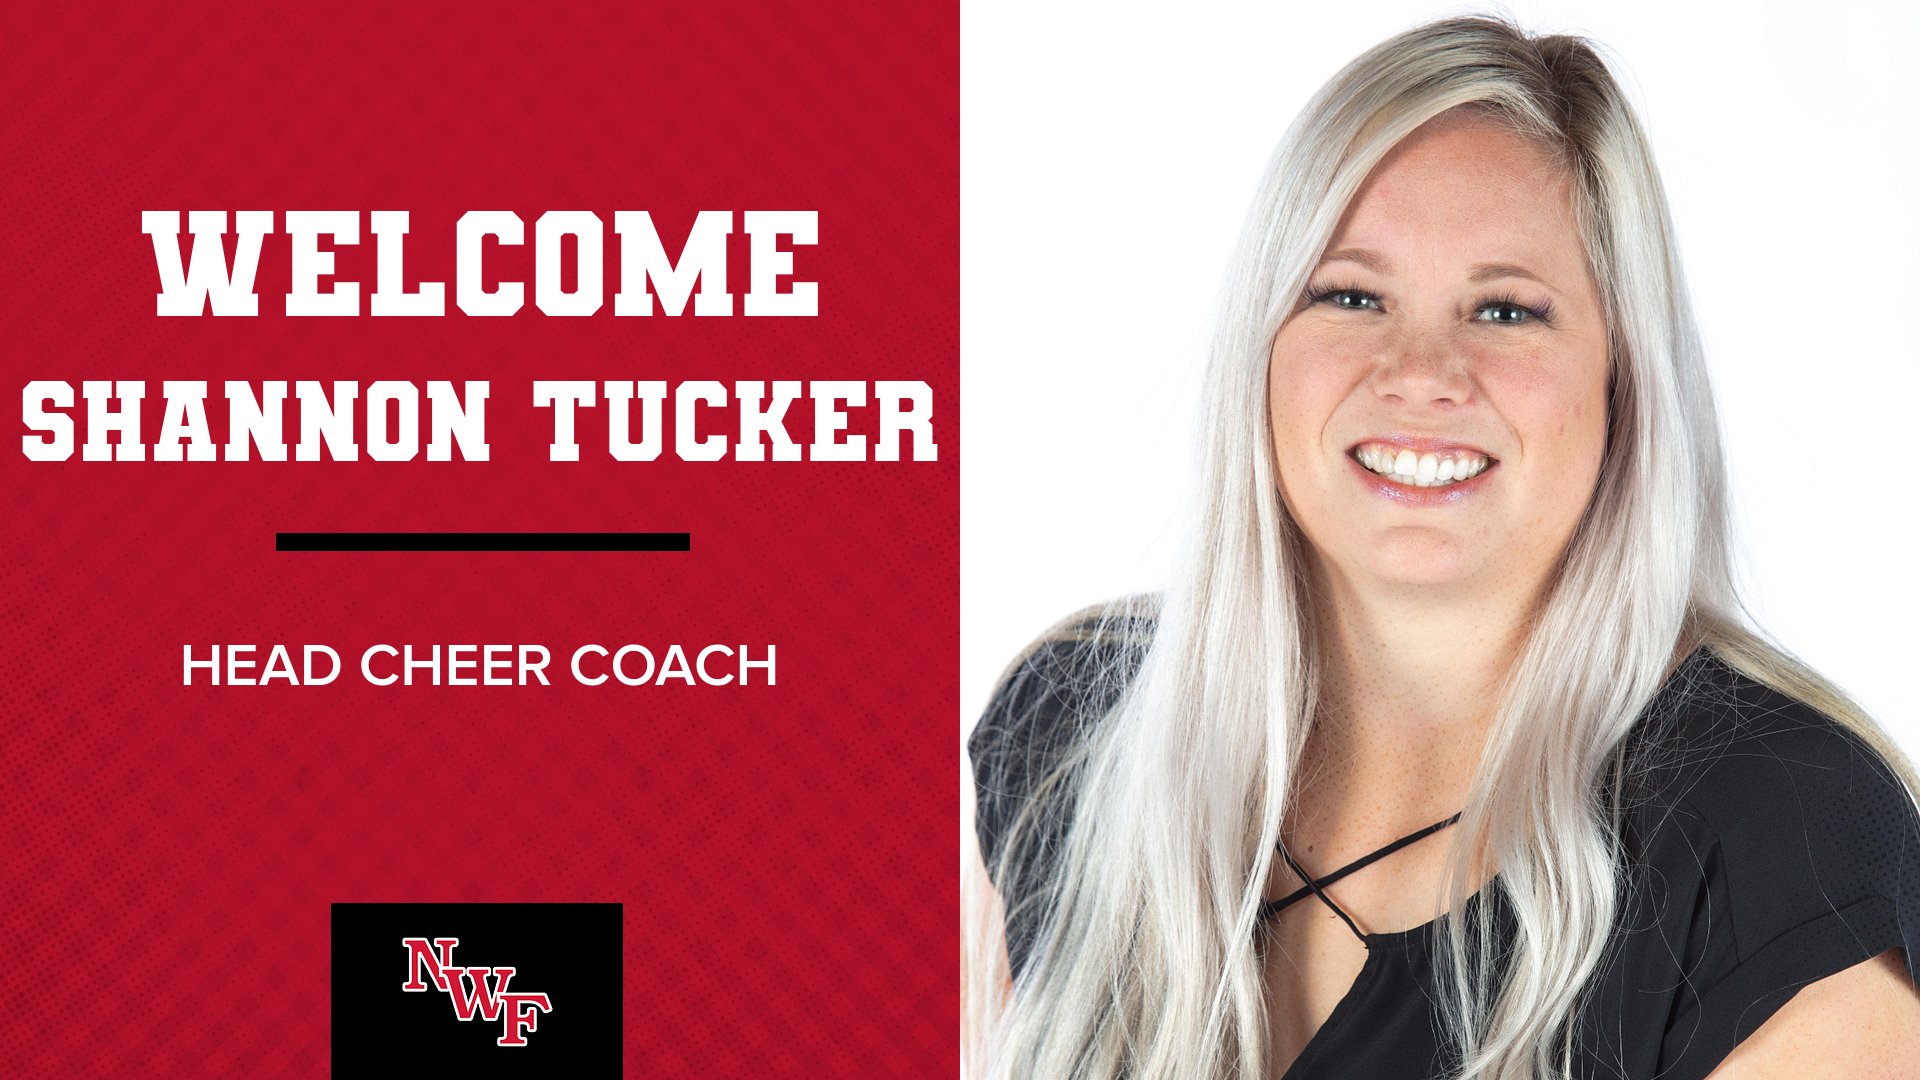 Shannon Tucker Named New Cheerleading Coach